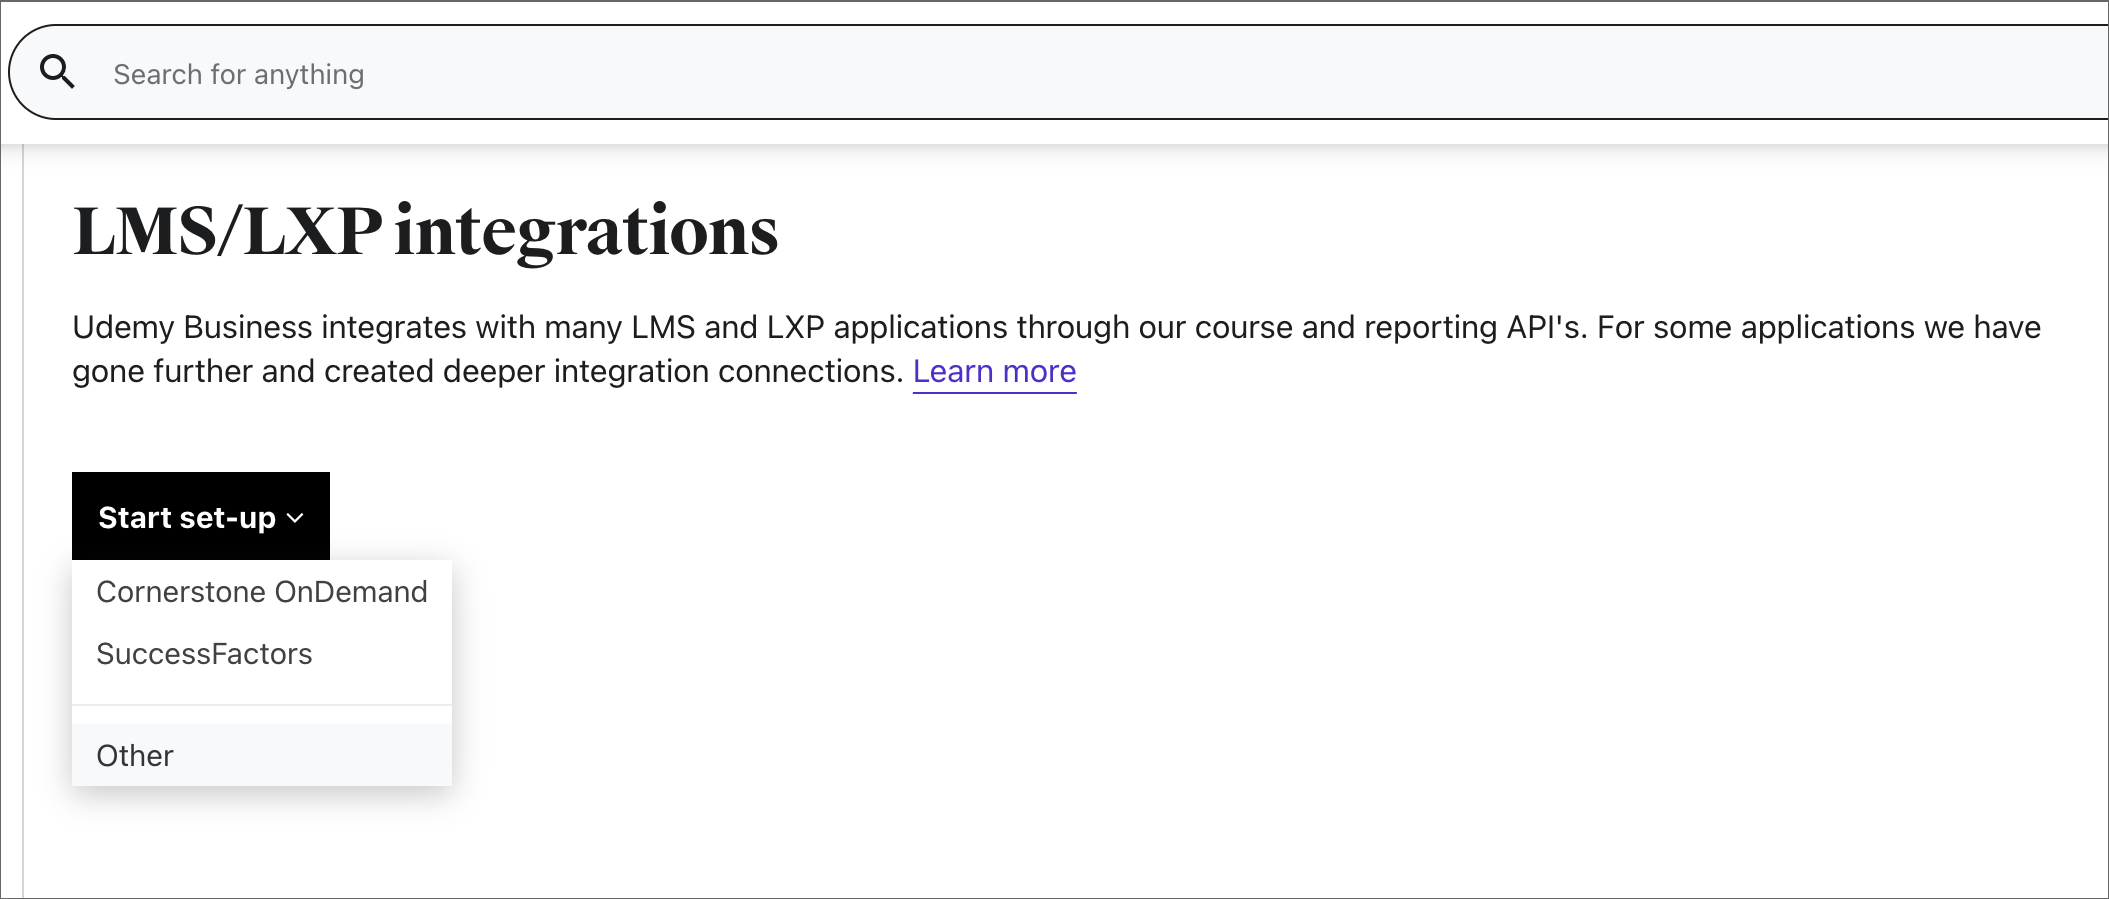 Immagine della pagina delle impostazioni di integrazione LMS/LXP.